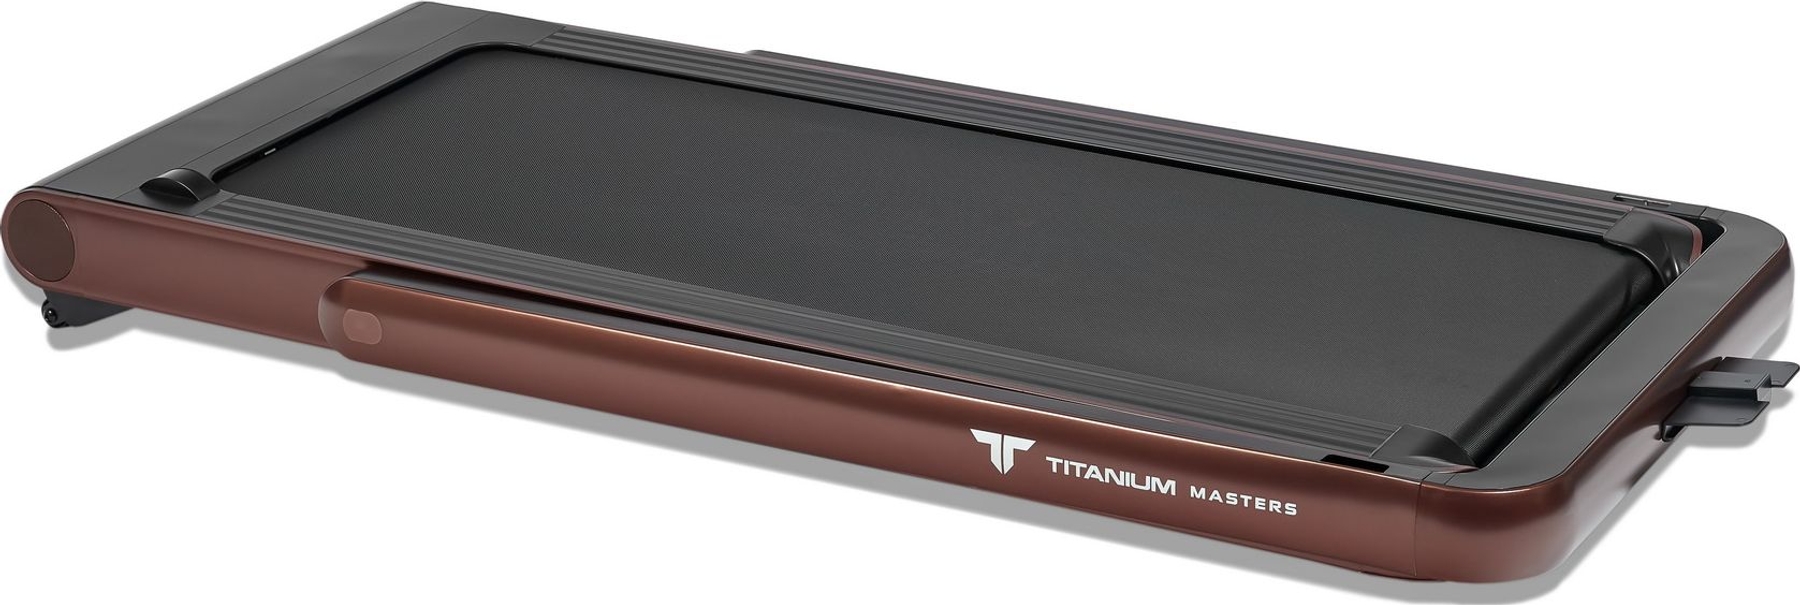 Реальное фото Беговая дорожка Titanium Masters Slimtech C20, коричневая от магазина СпортЕВ